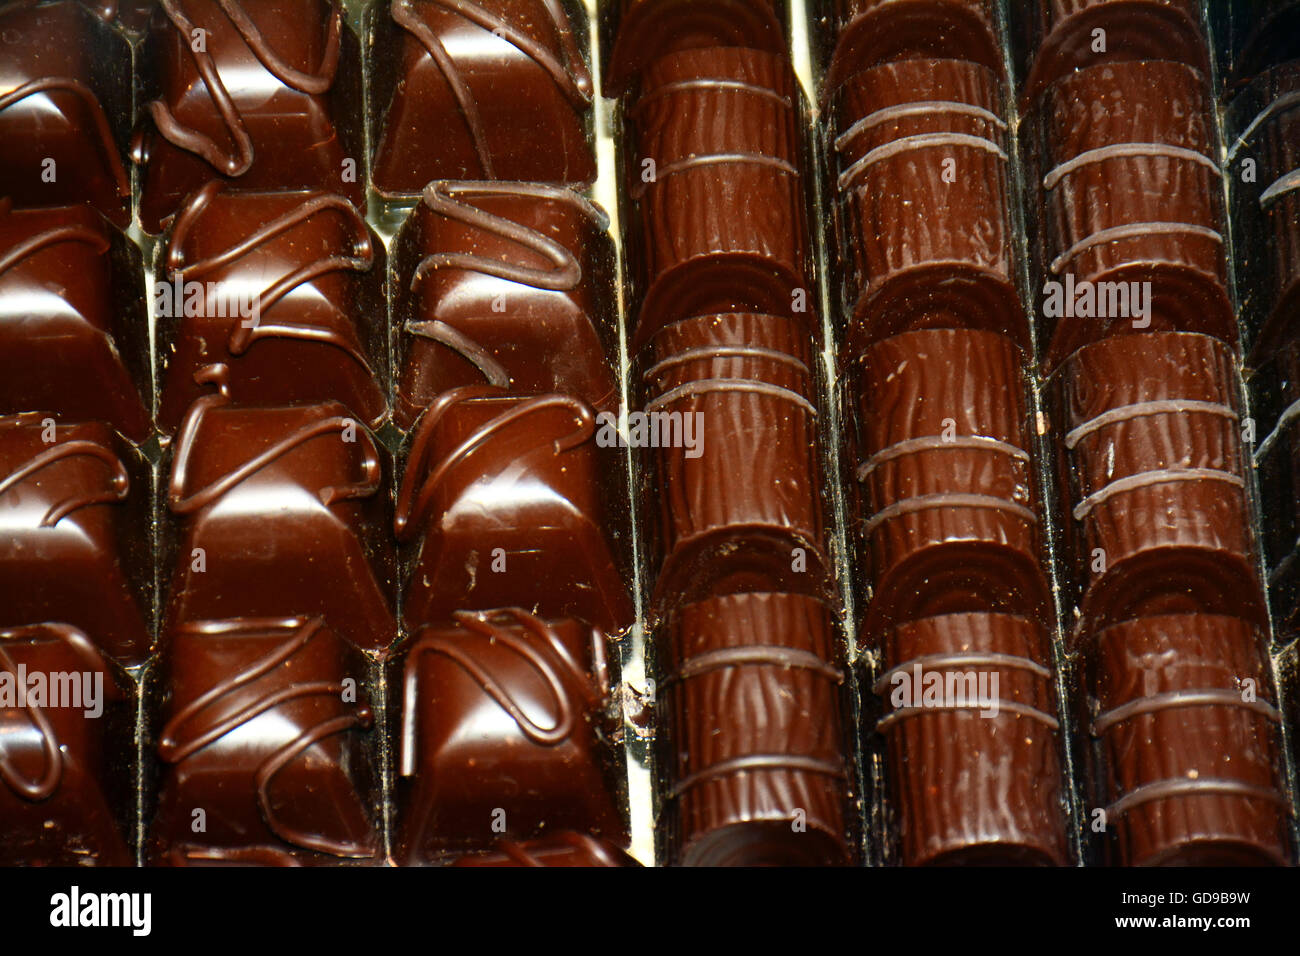 Dark Chocolate Candies, Stock Photo